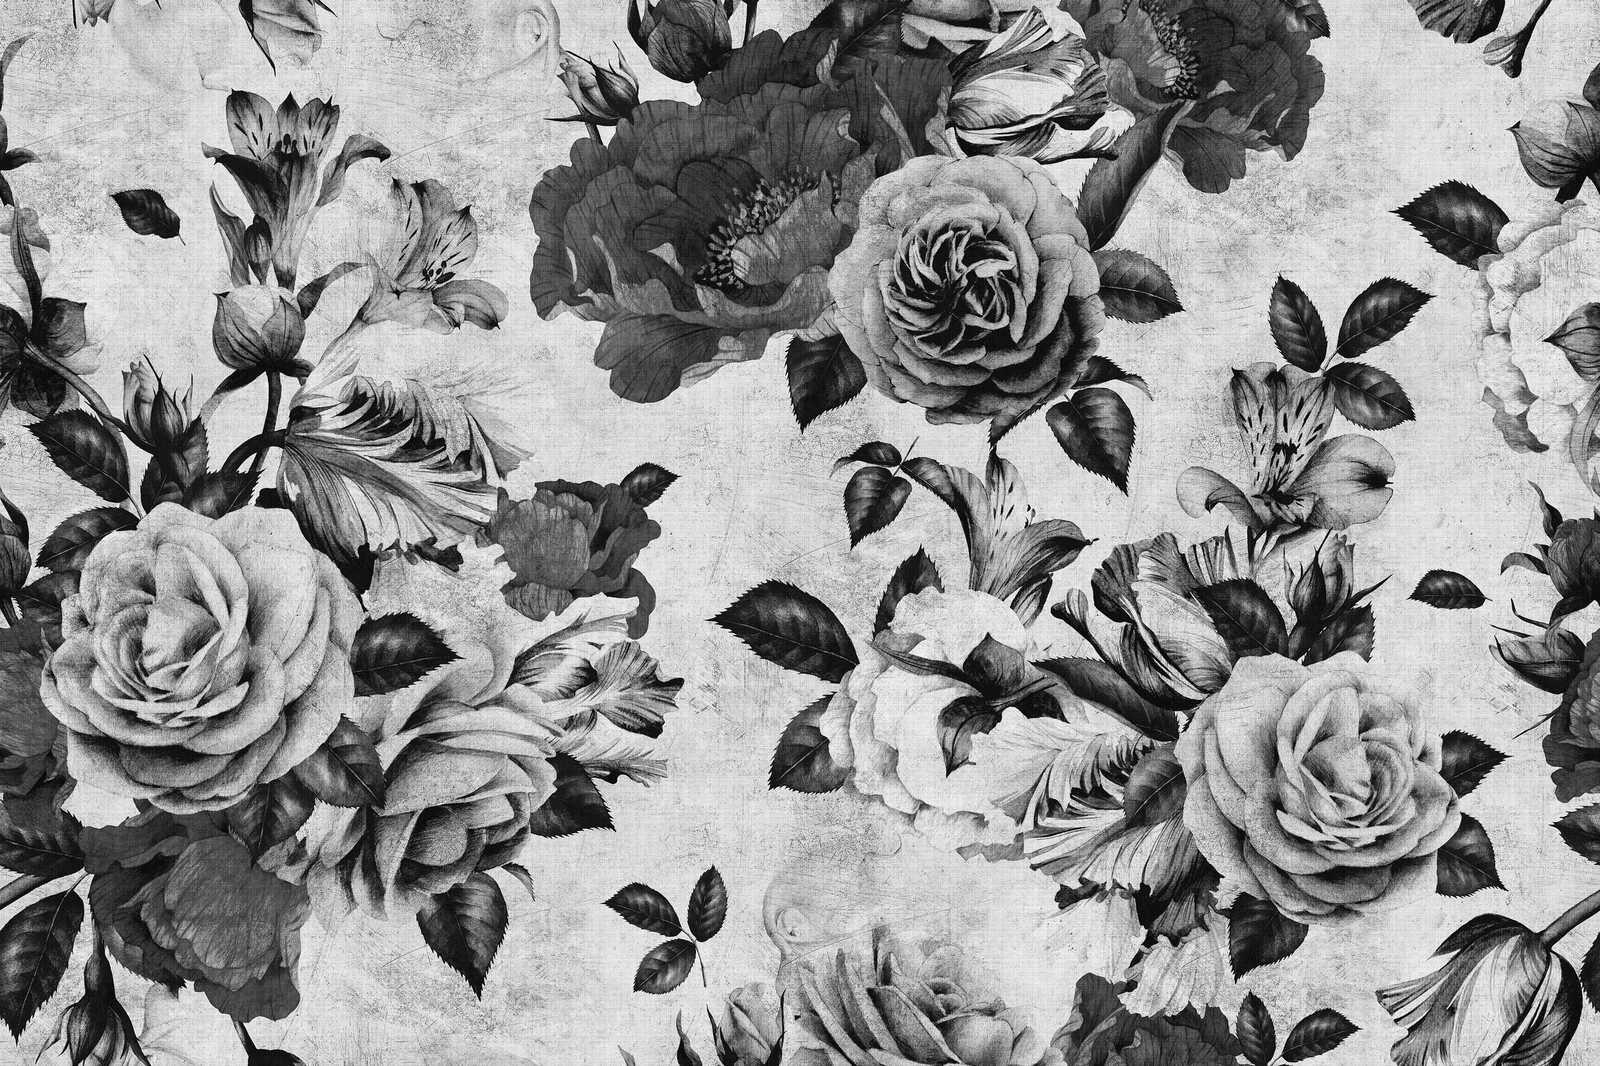             Spanish rose 1 - toile de roses avec fleurs en noir et blanc - 1,20 m x 0,80 m
        